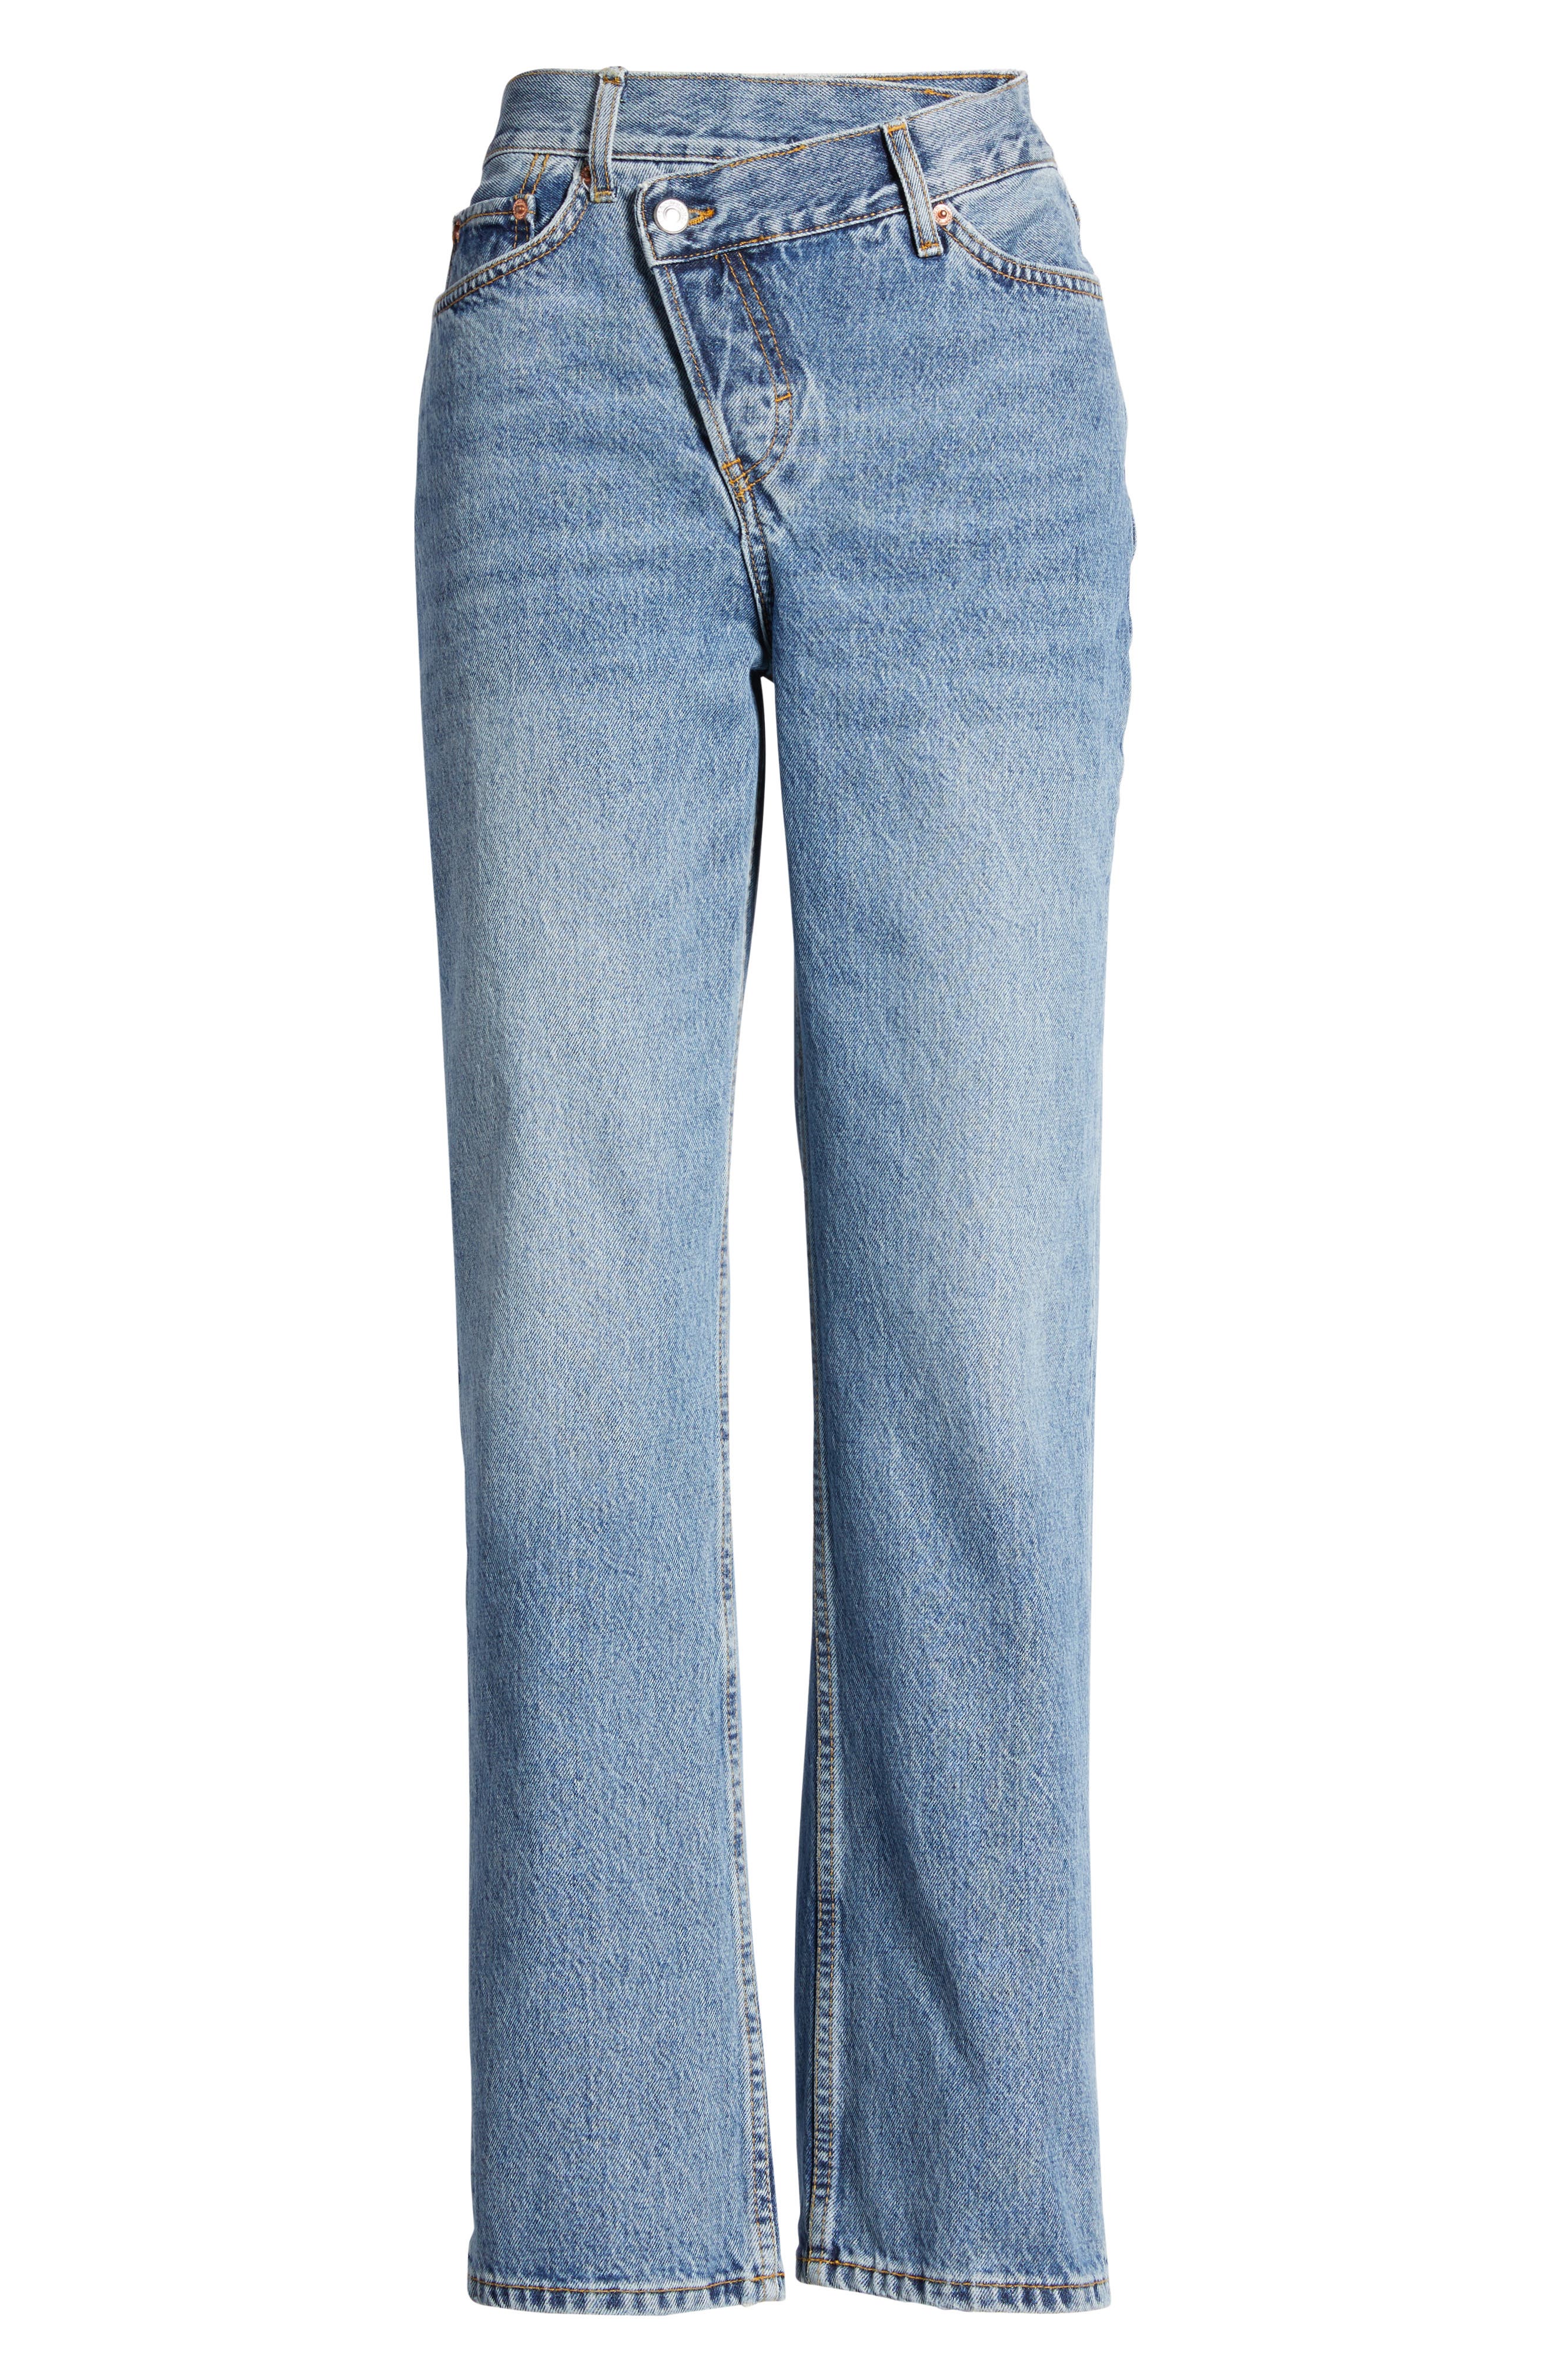 topshop jeans plus size